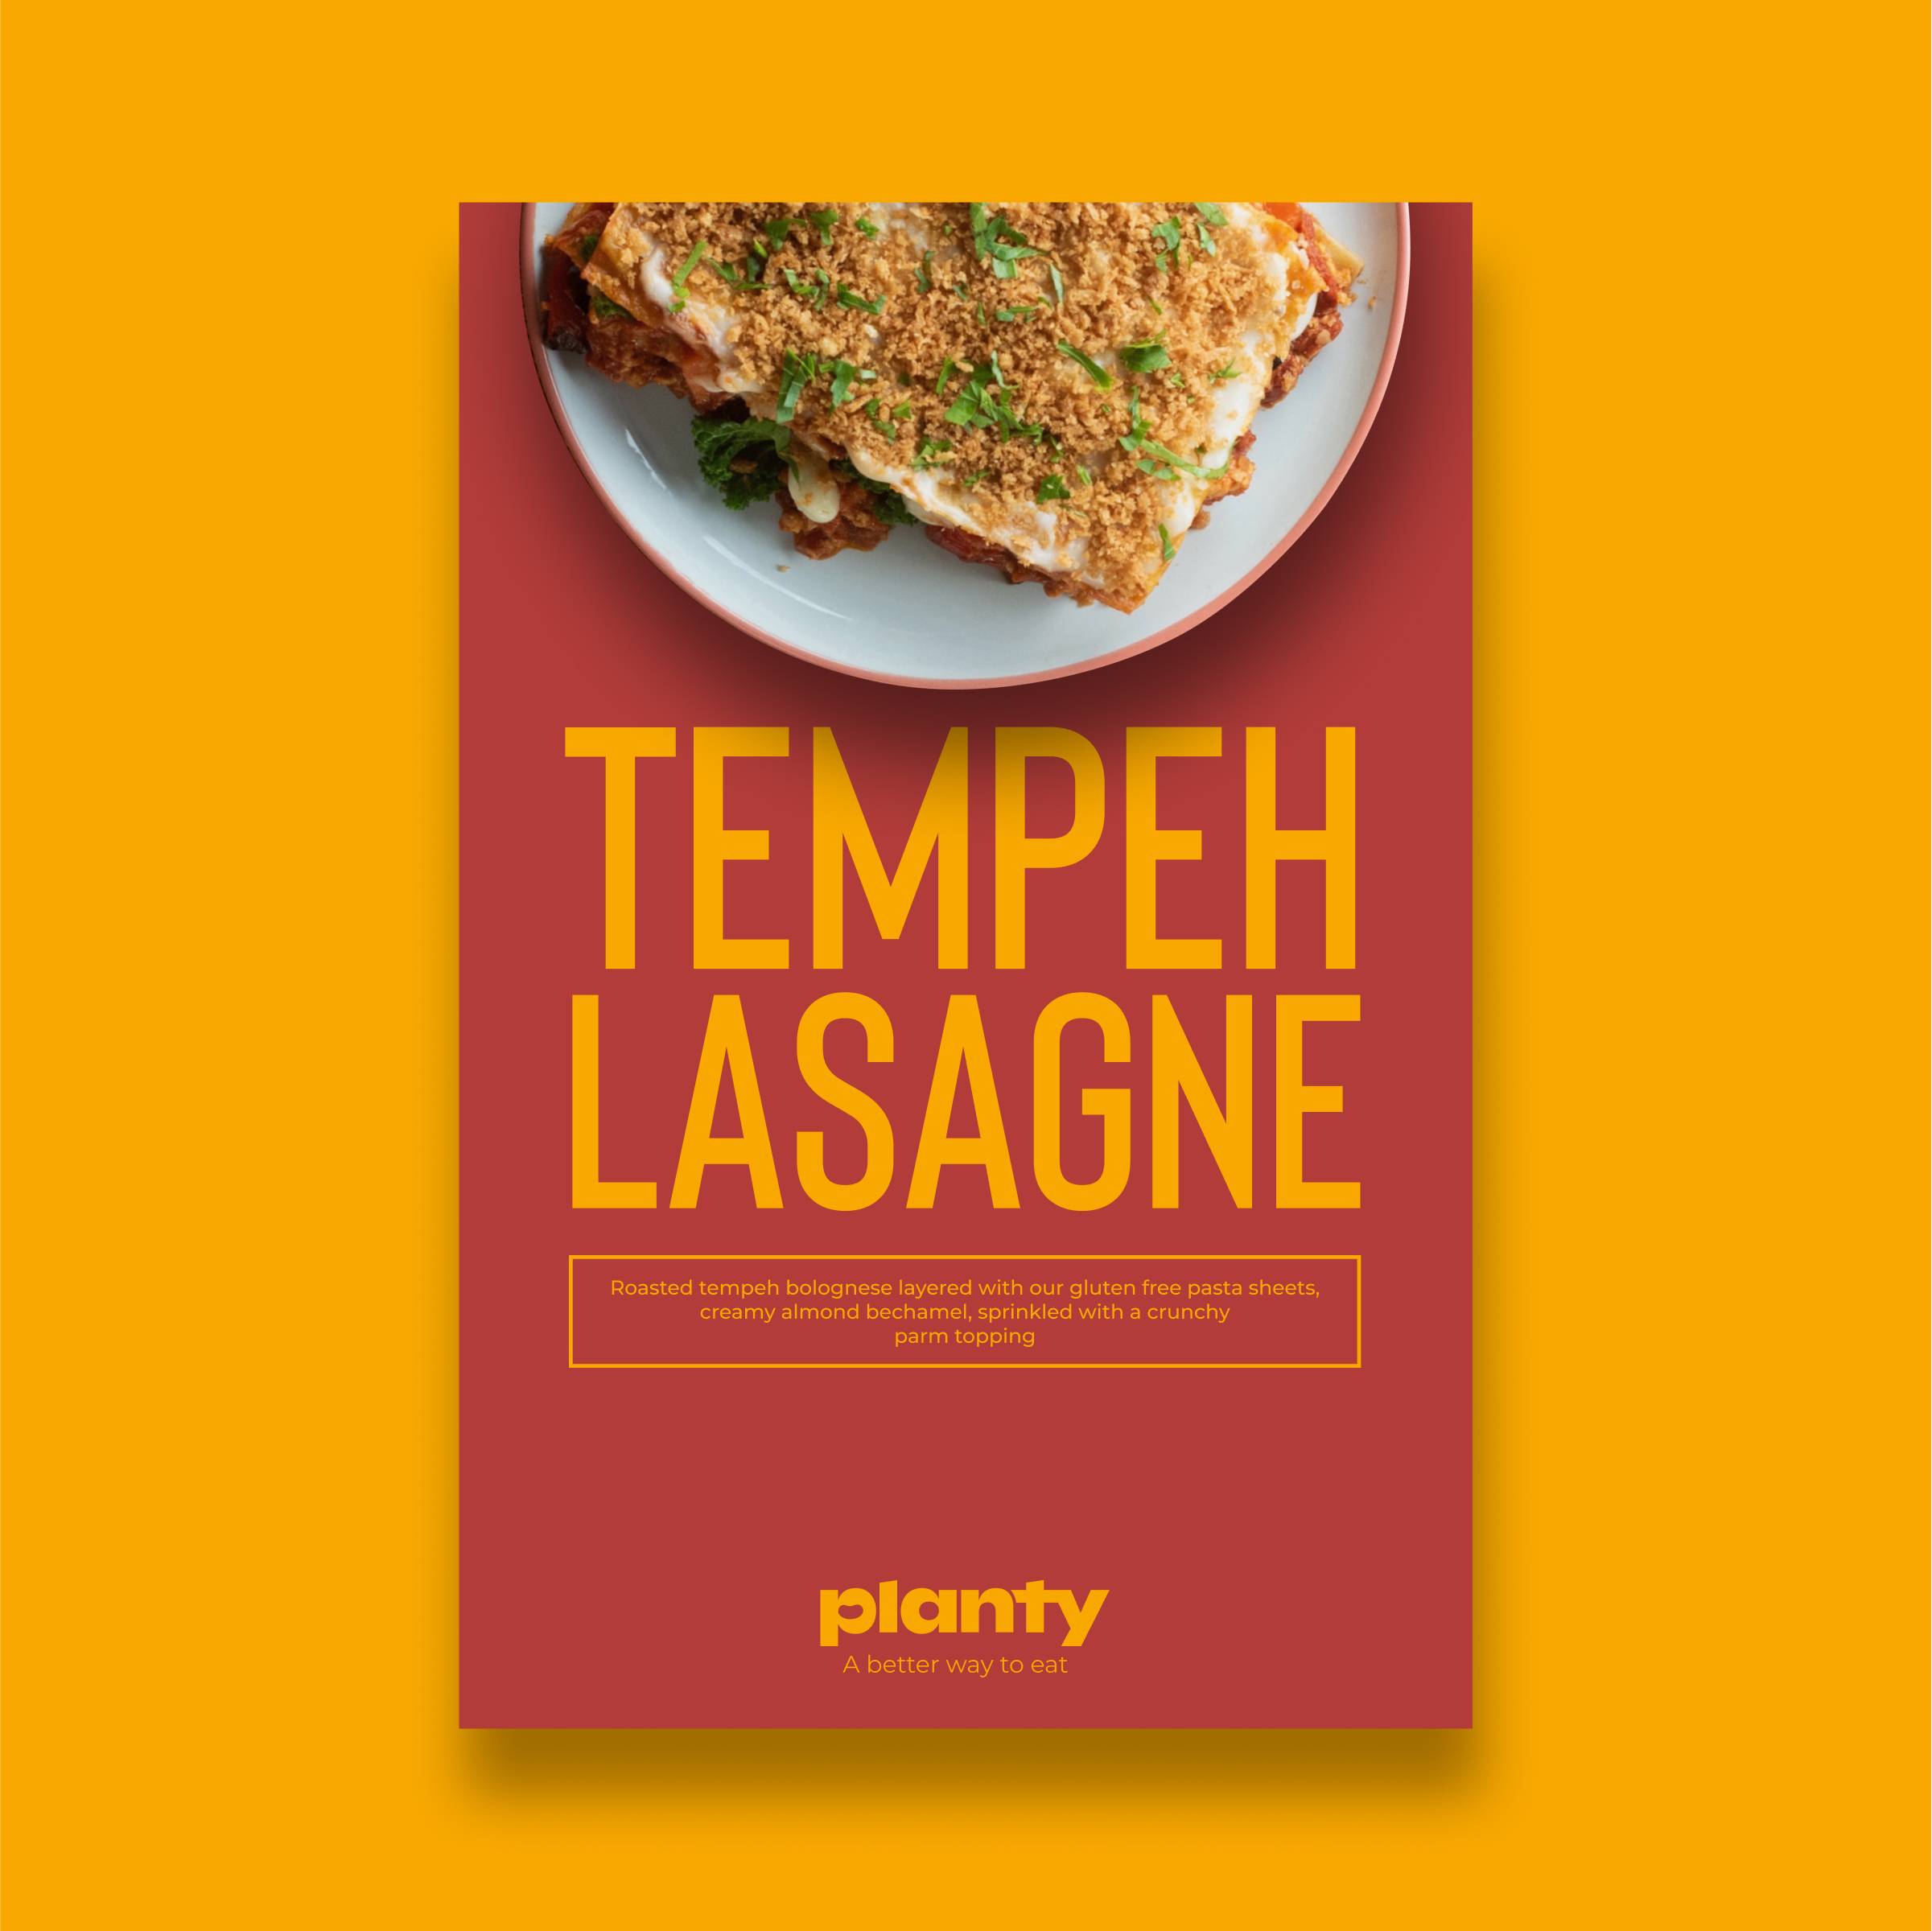 Tempeh Lasagne image 2